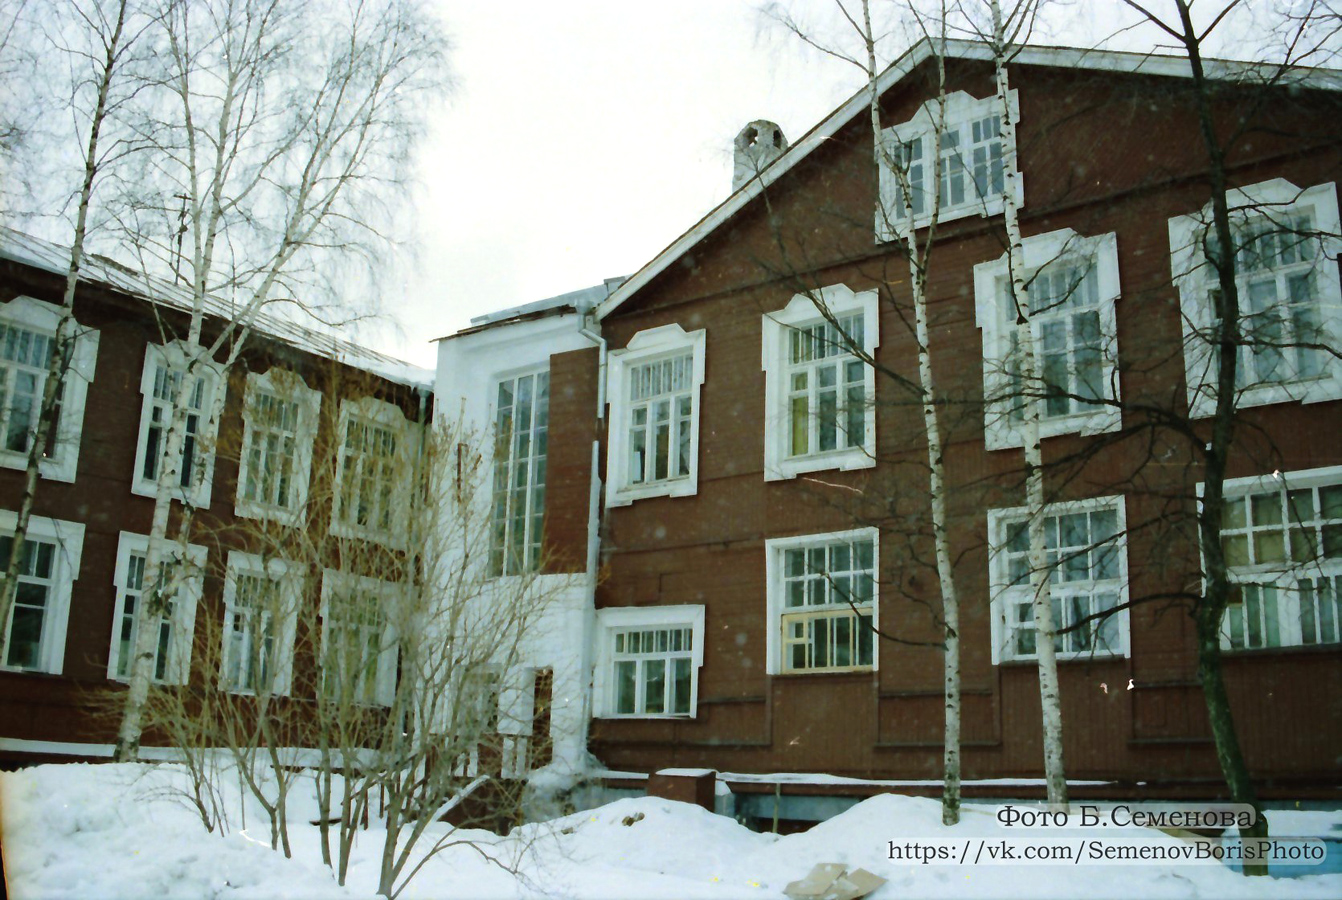 1997. Petroskoi. Kareldrev -trustin rakennus